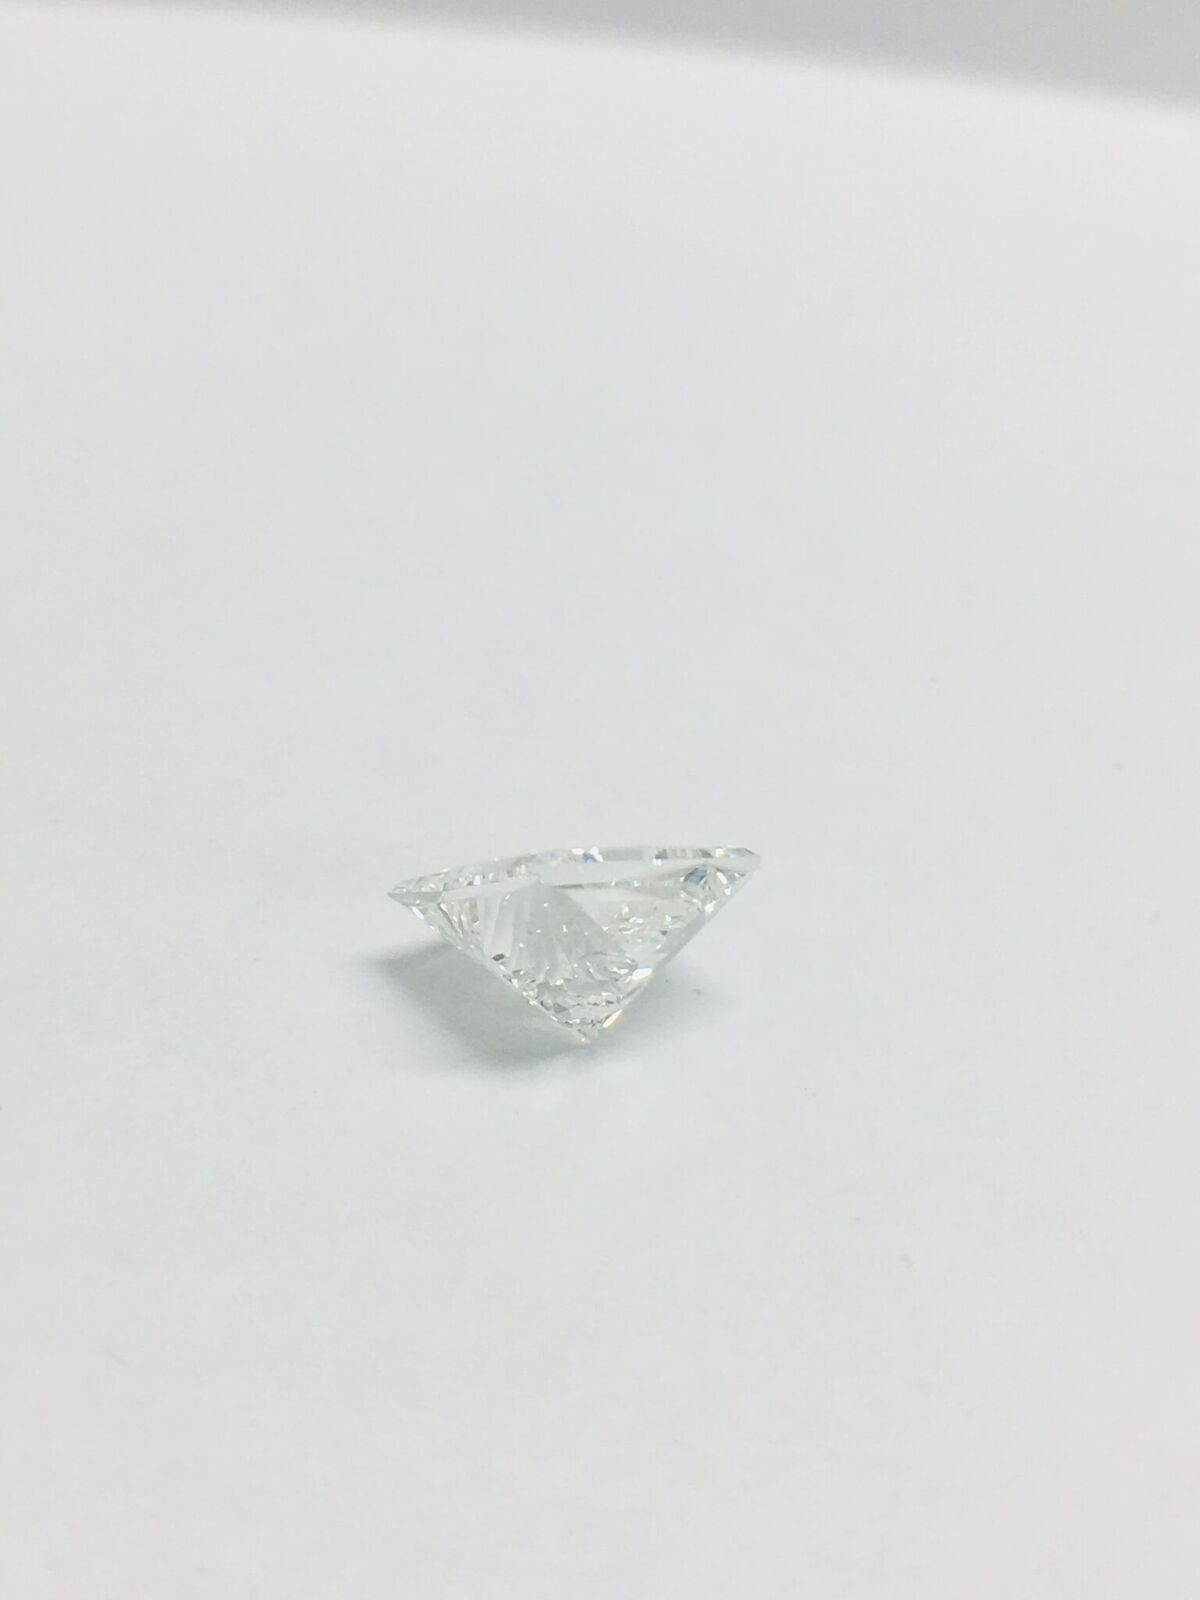 1.95ct Princess cut Diamond - Image 15 of 42